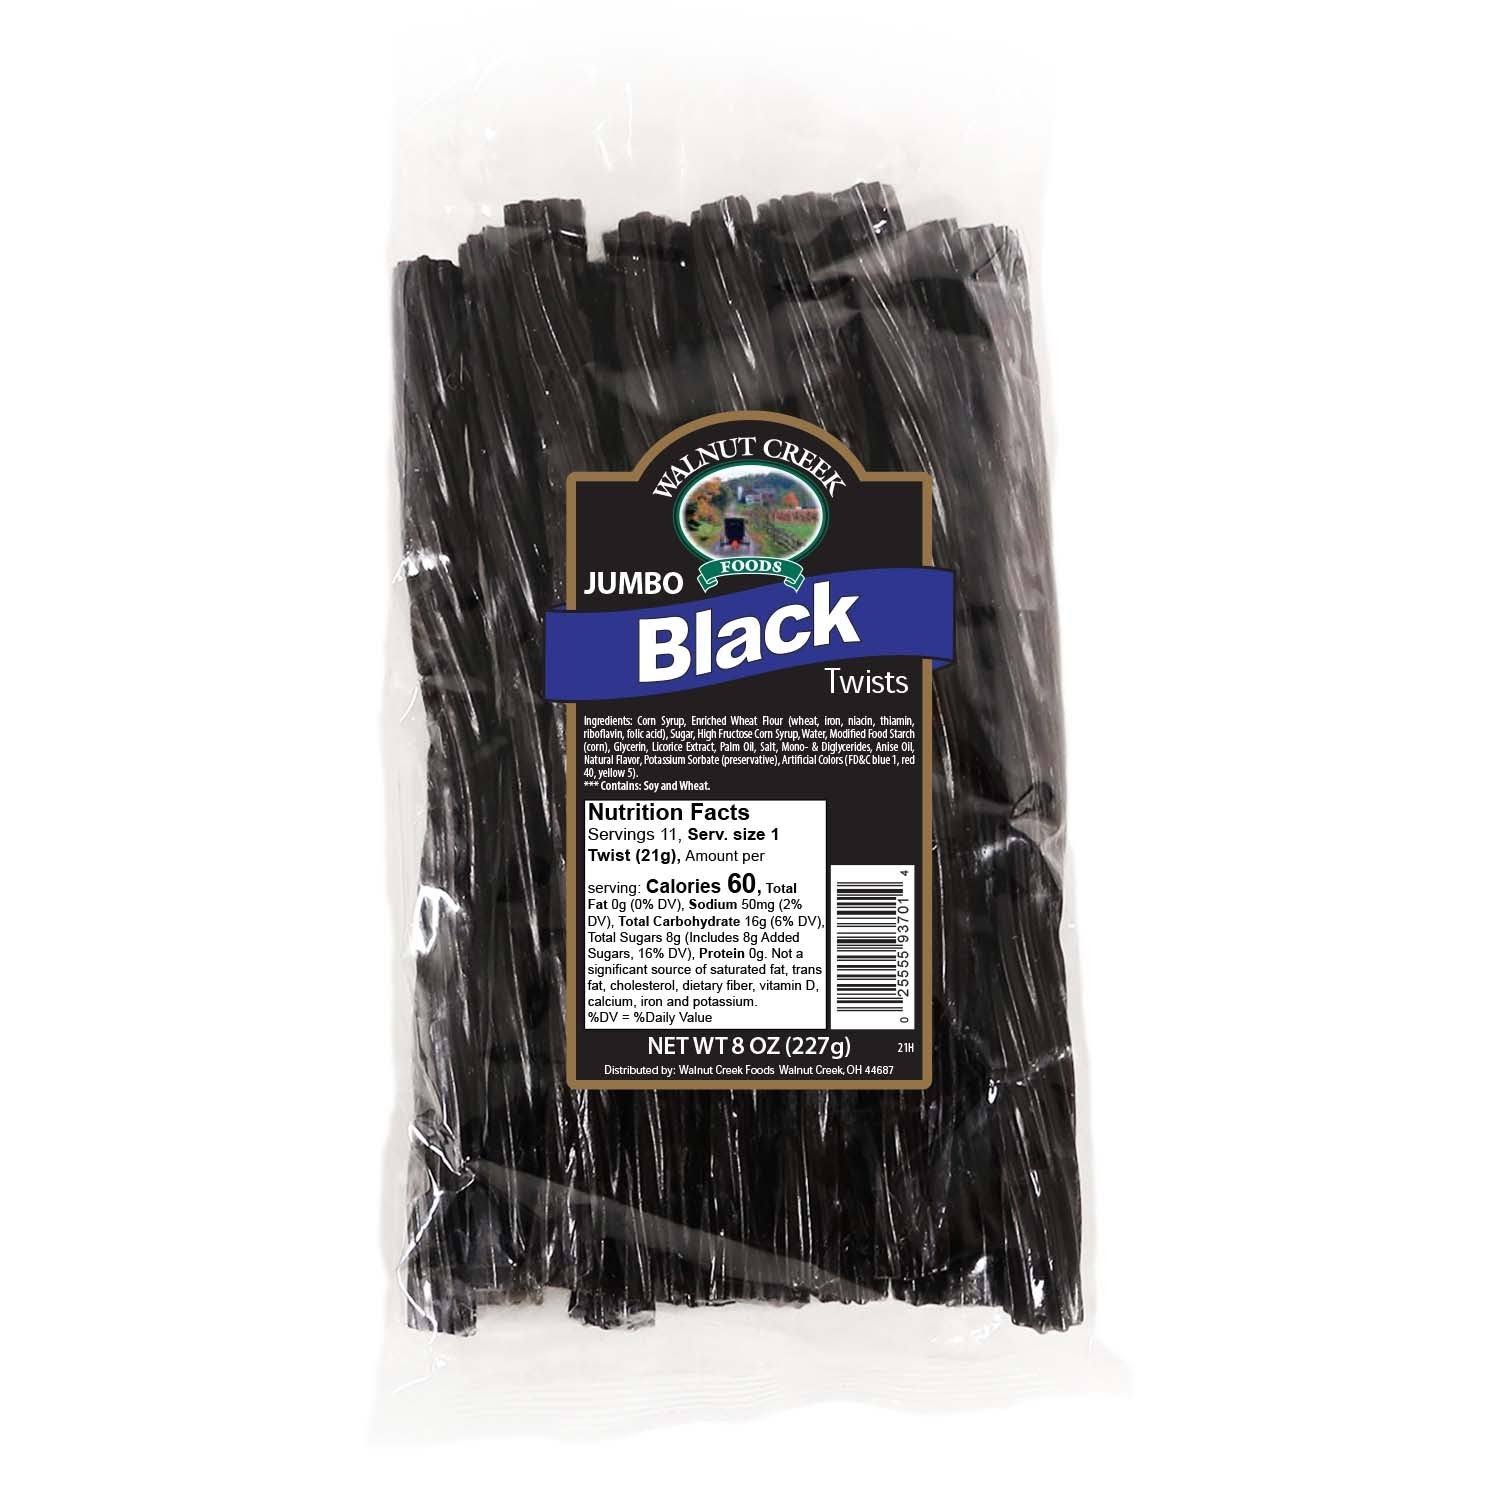 Walnut Creek Black Licorice Twists - 8-oz. Bag